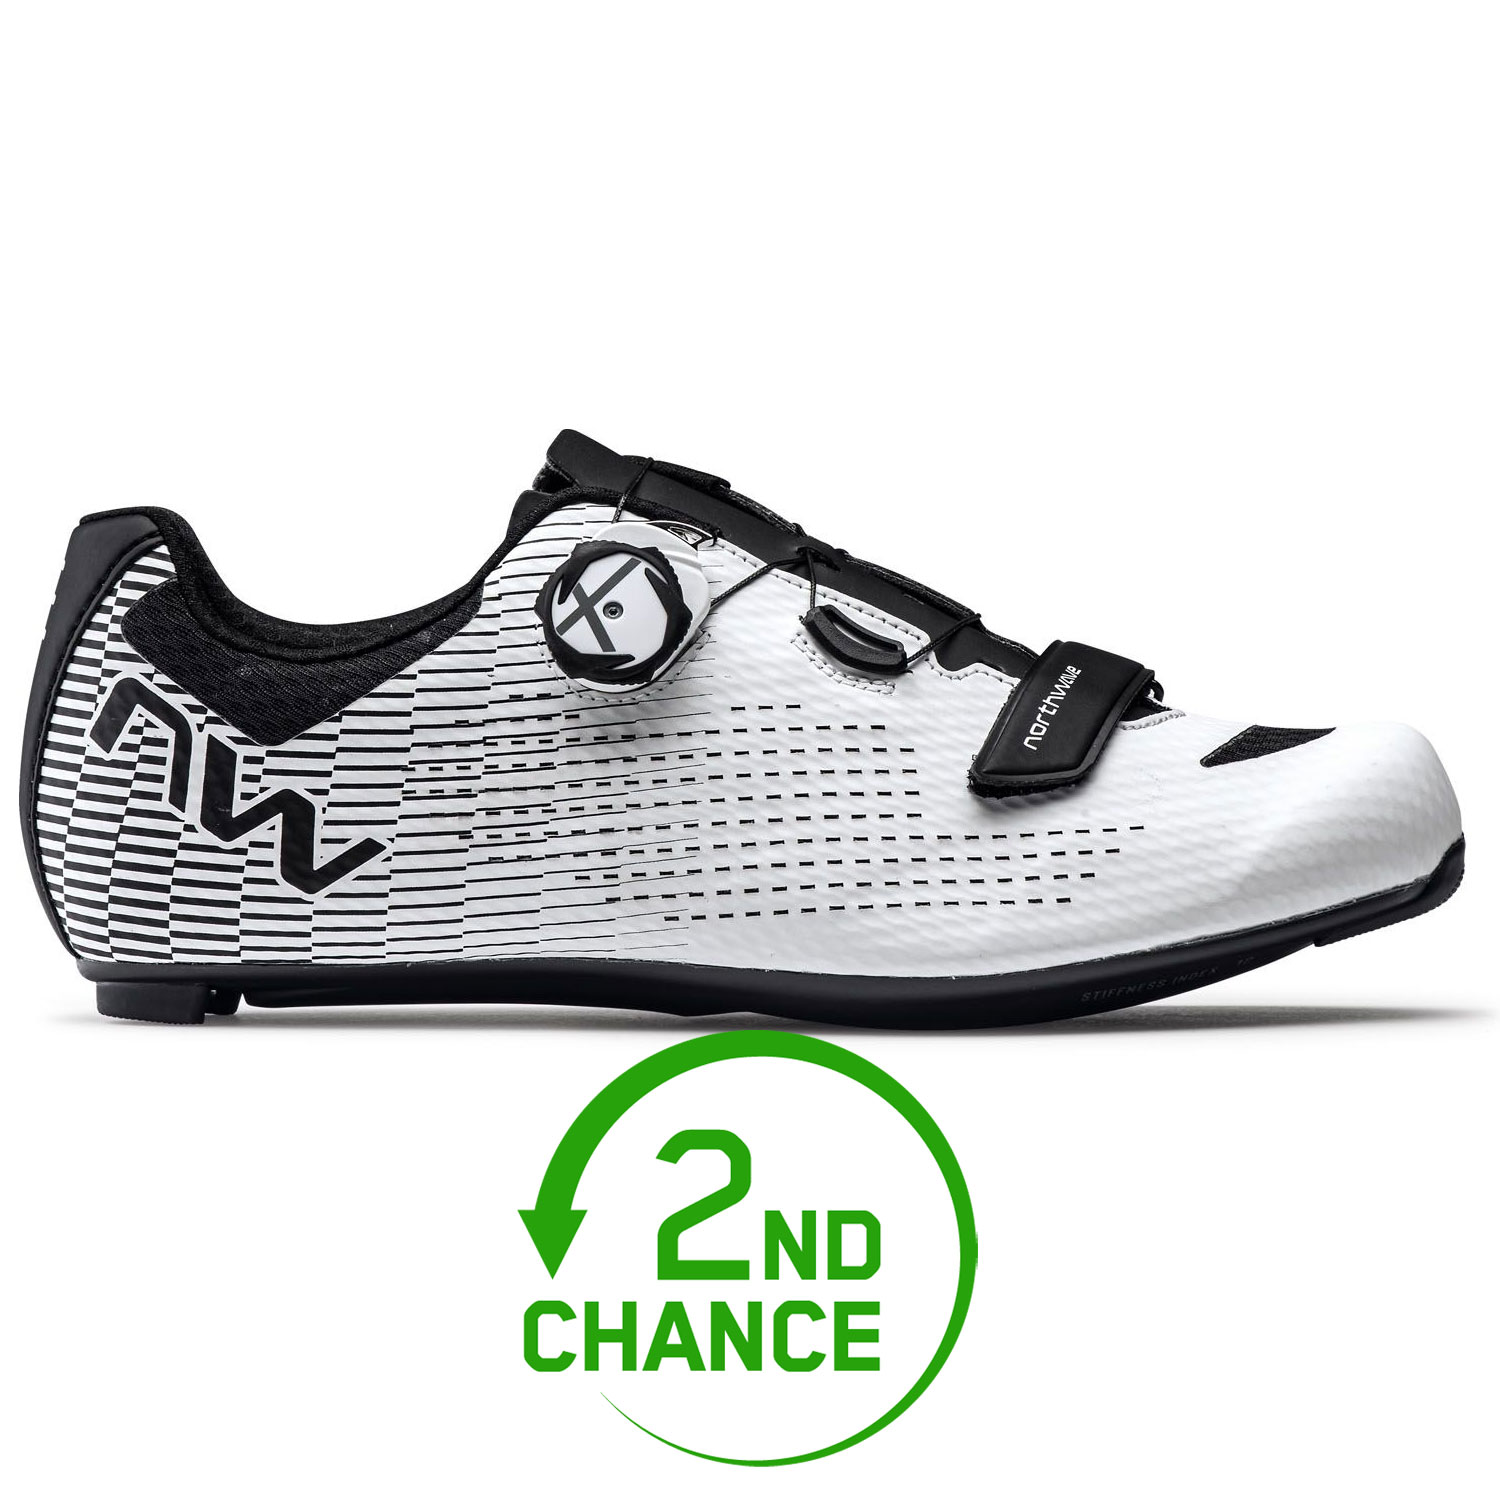 Produktbild von Northwave Storm Carbon 2 Rennradschuhe Herren - weiß/schwarz 51 - B-Ware